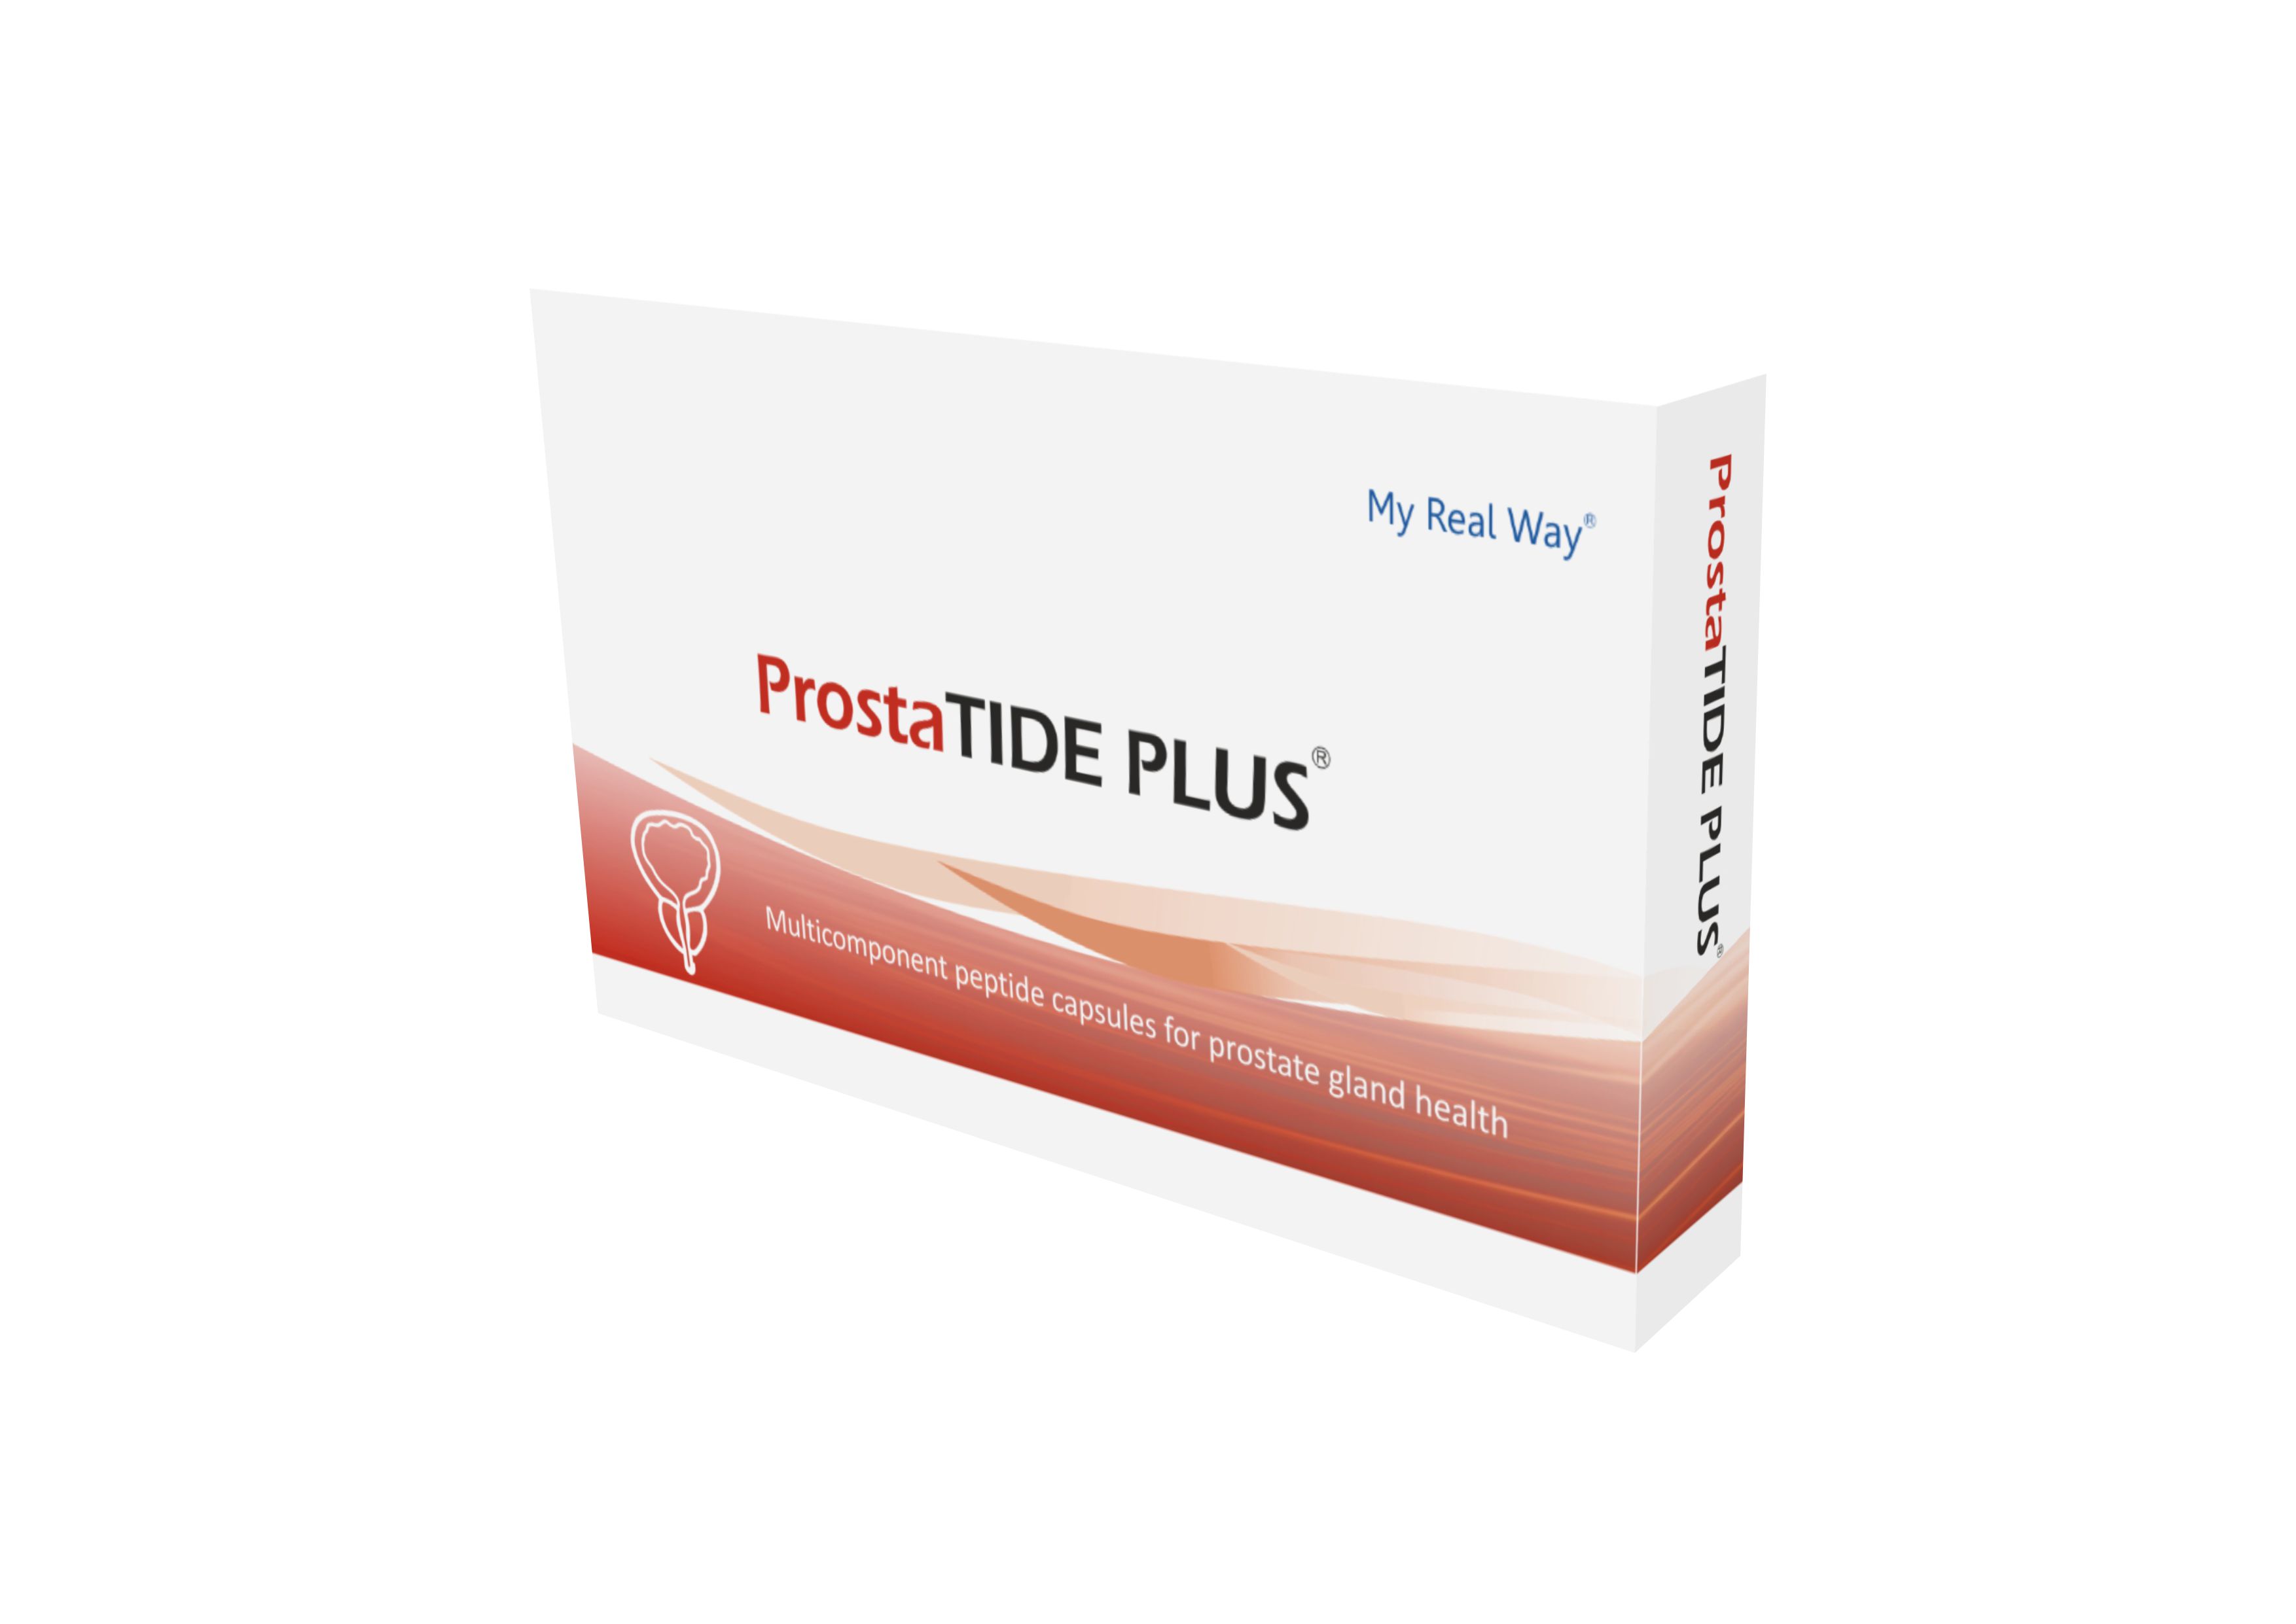 ProstaTIDE PLUS peptides for prostate gland